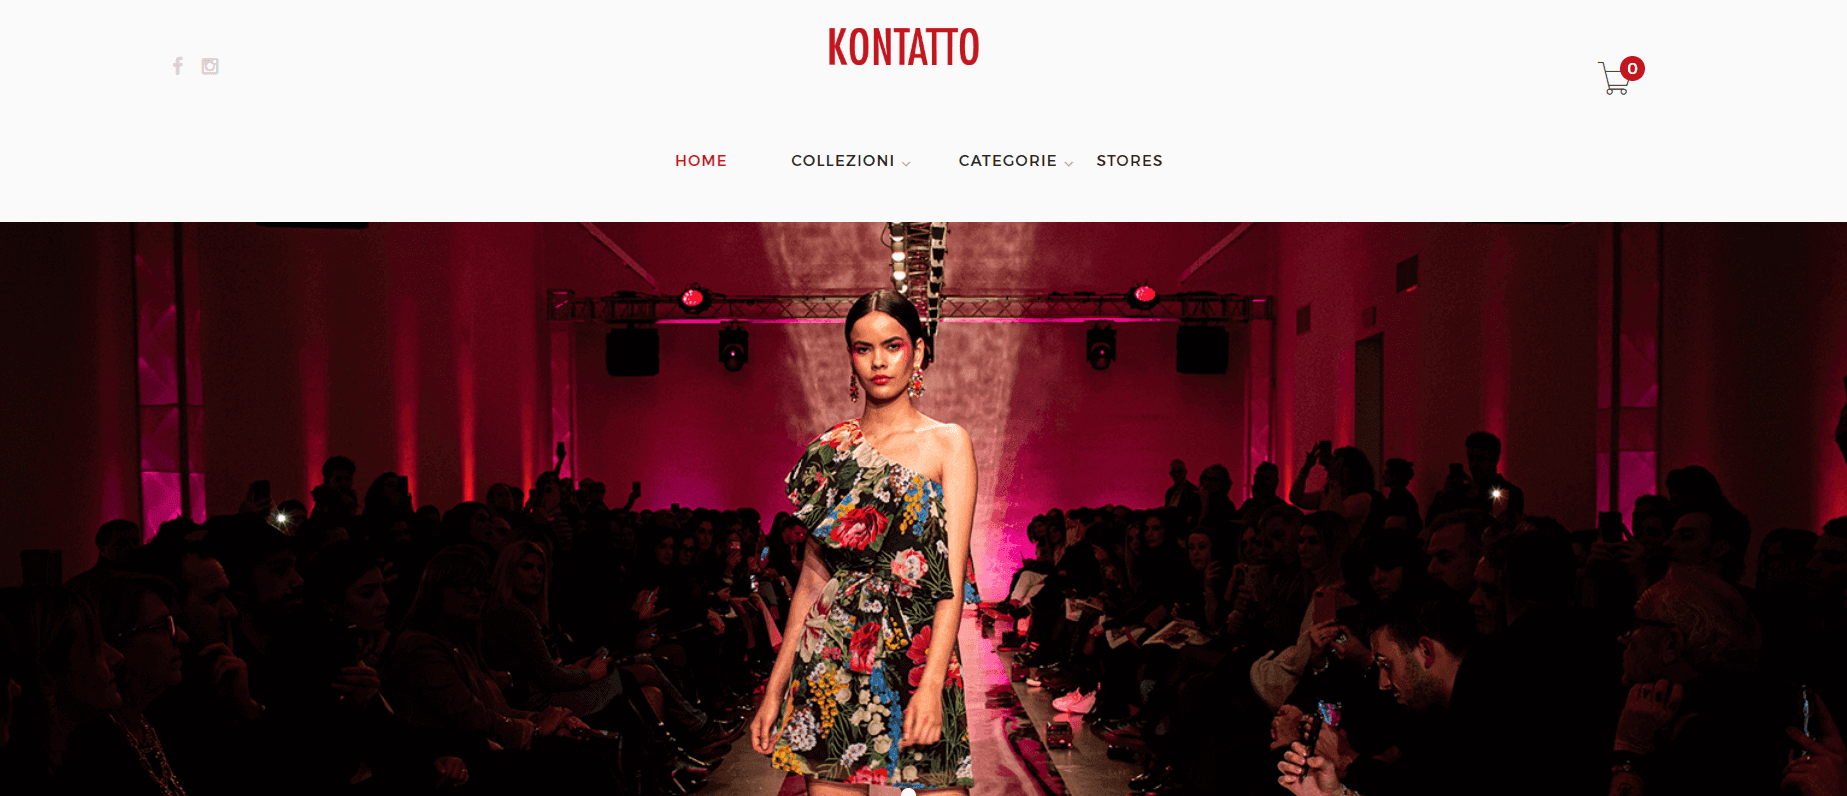 Kontatto купити онлайн з доставкою в Україну - Meest Shopping - 2